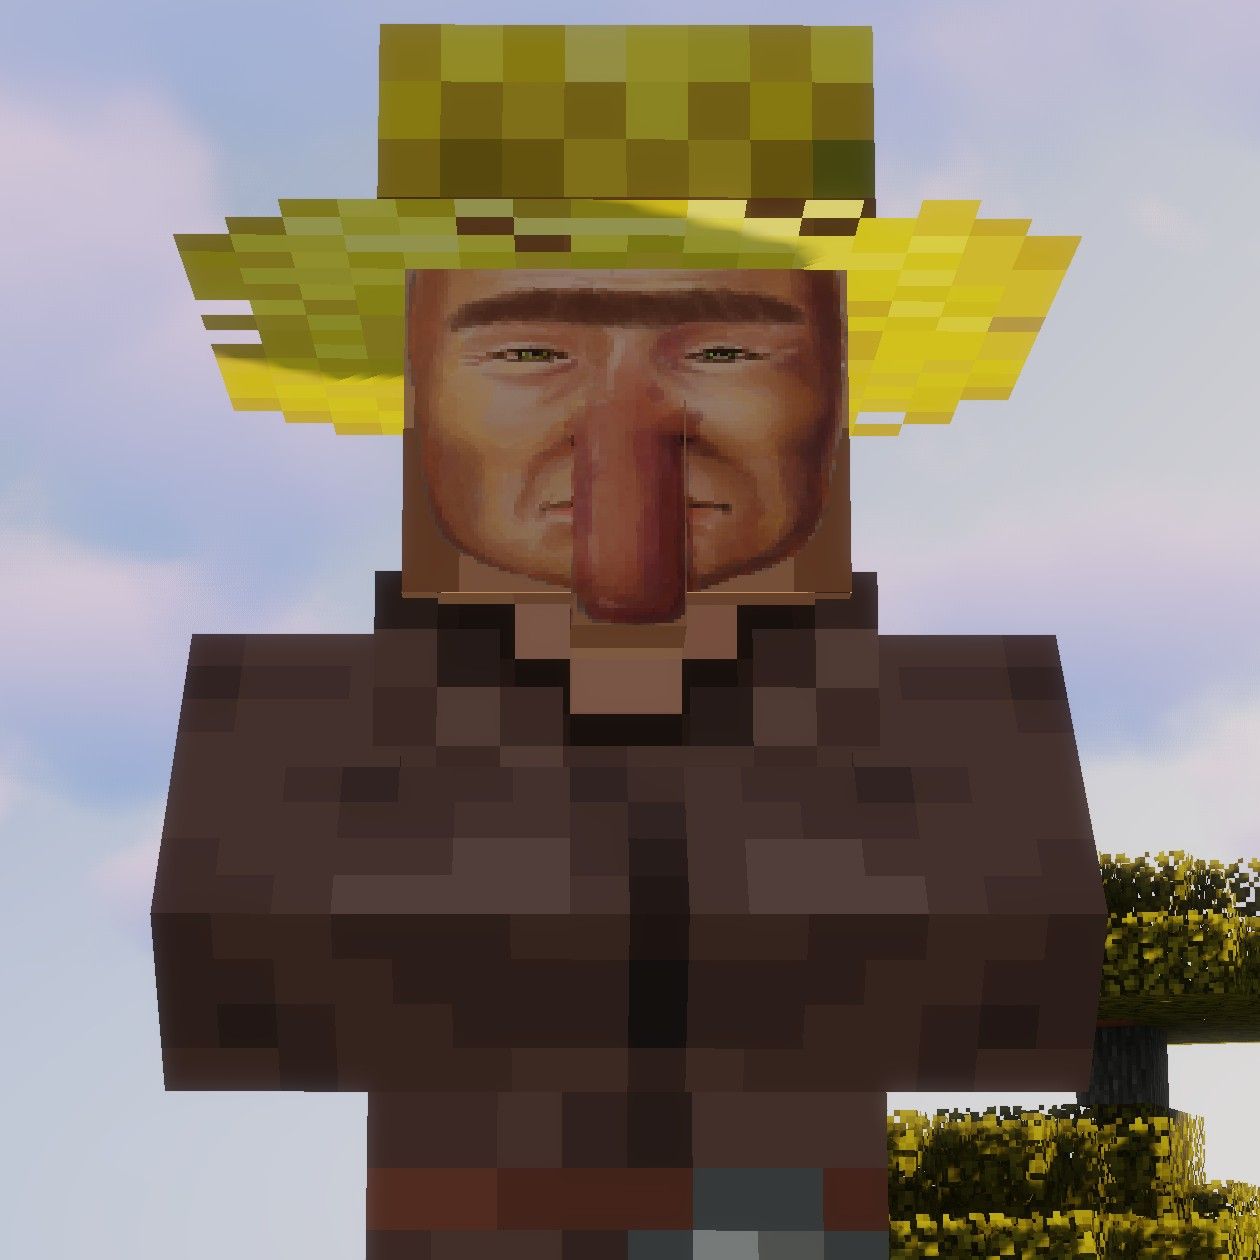 Minecraft Memes - "Villager Burglar"